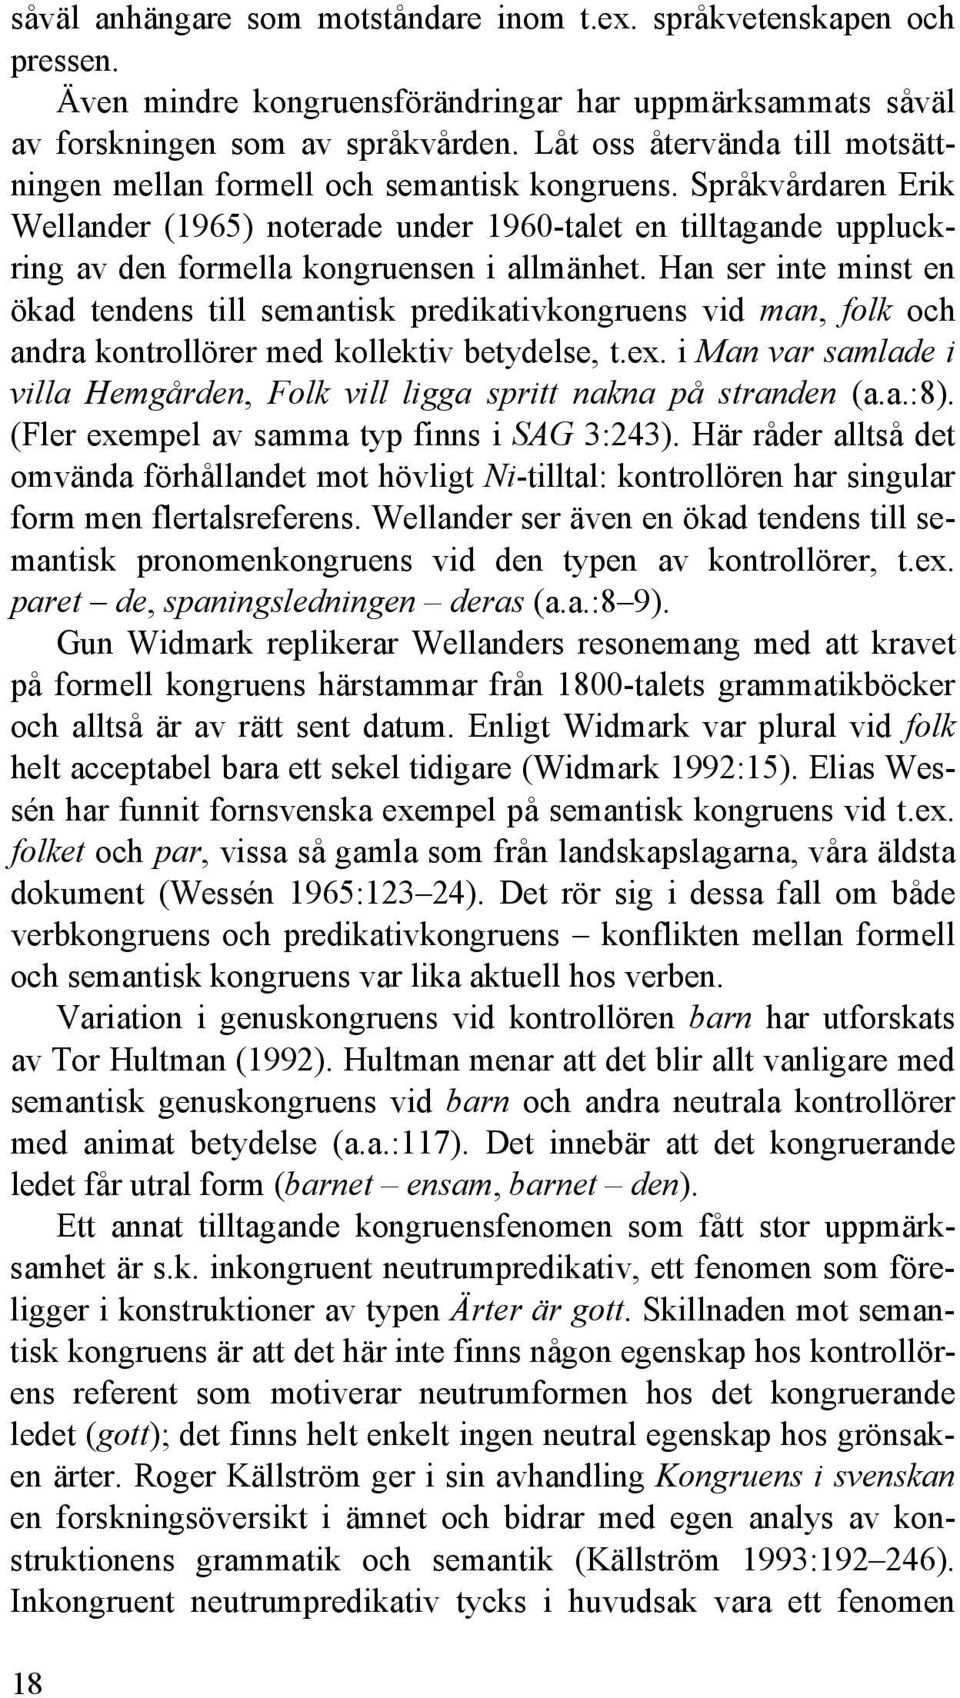 Språkvårdaren Erik Wellander (1965) noterade under 1960-talet en tilltagande uppluckring av den formella kongruensen i allmänhet.